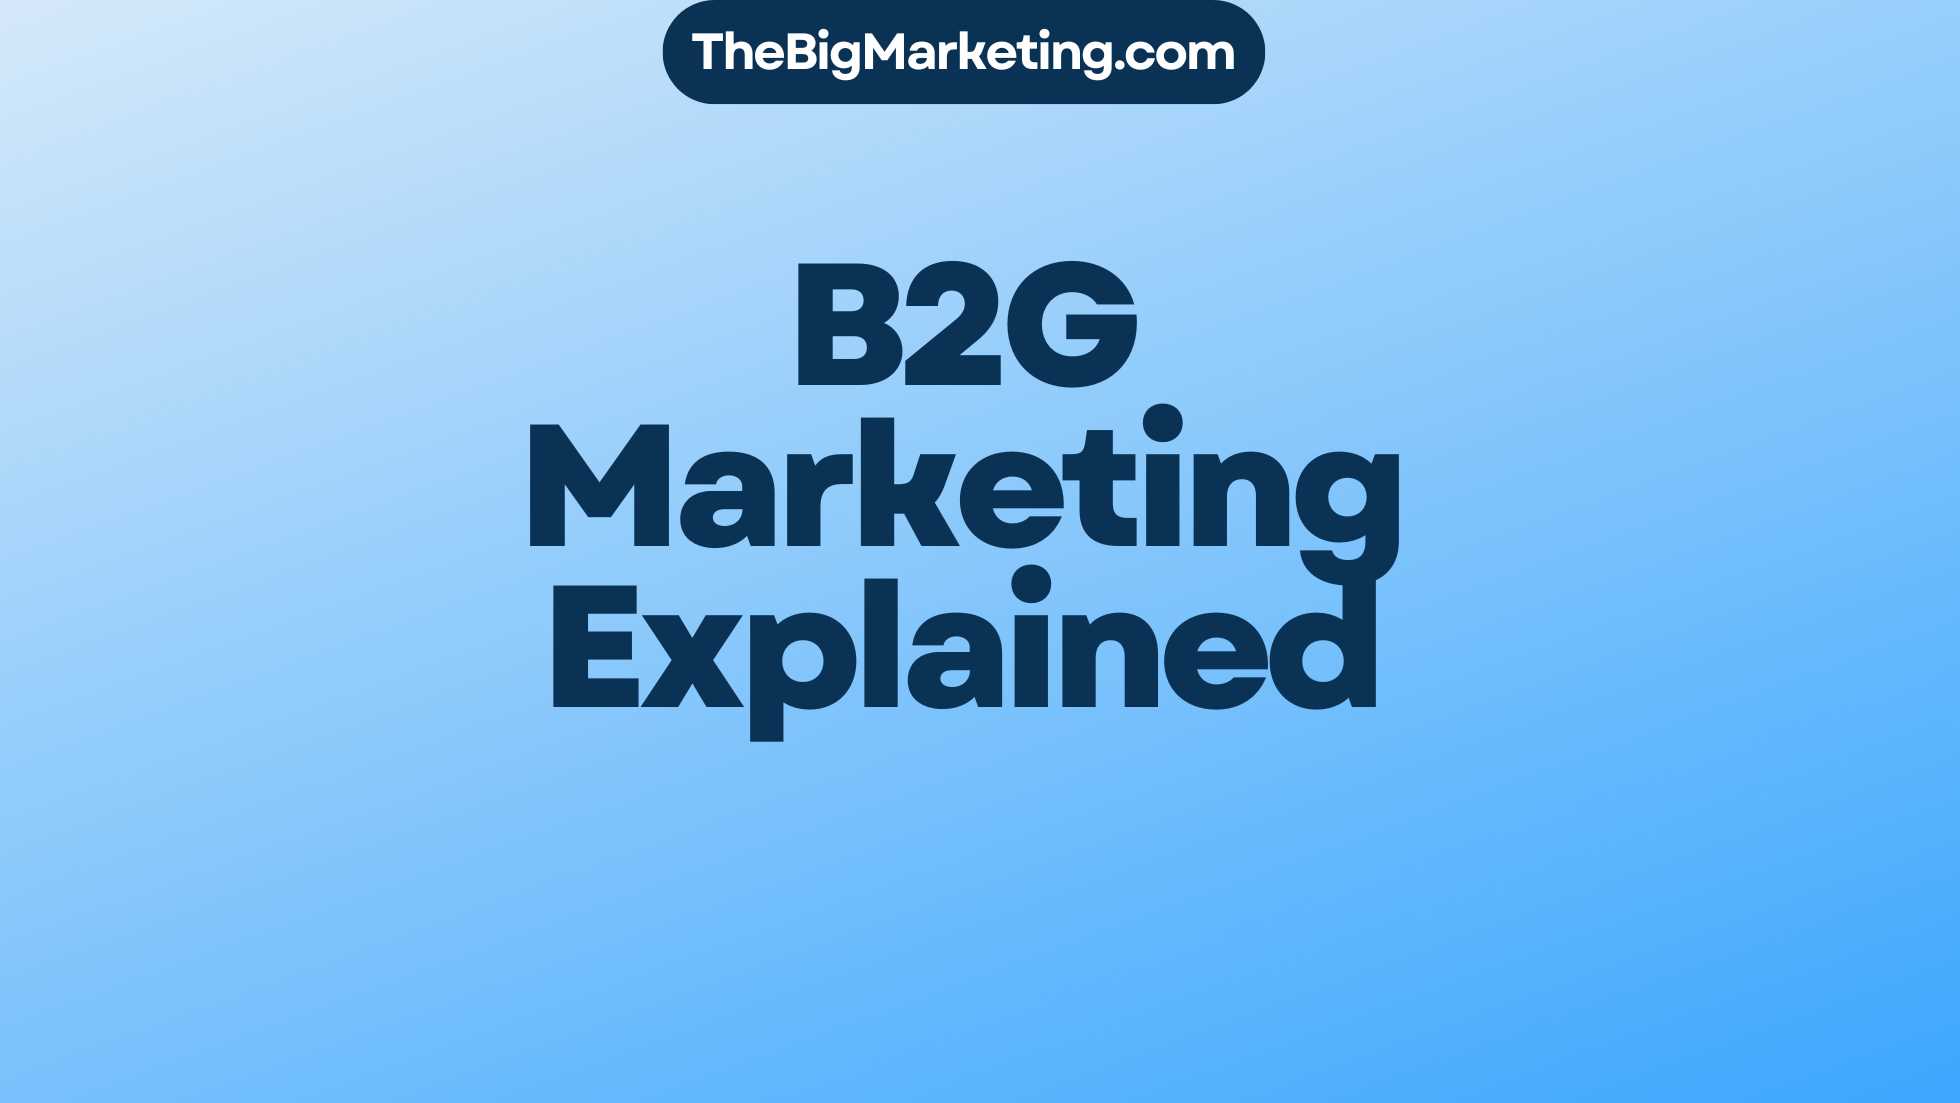 B2G Marketing Explained